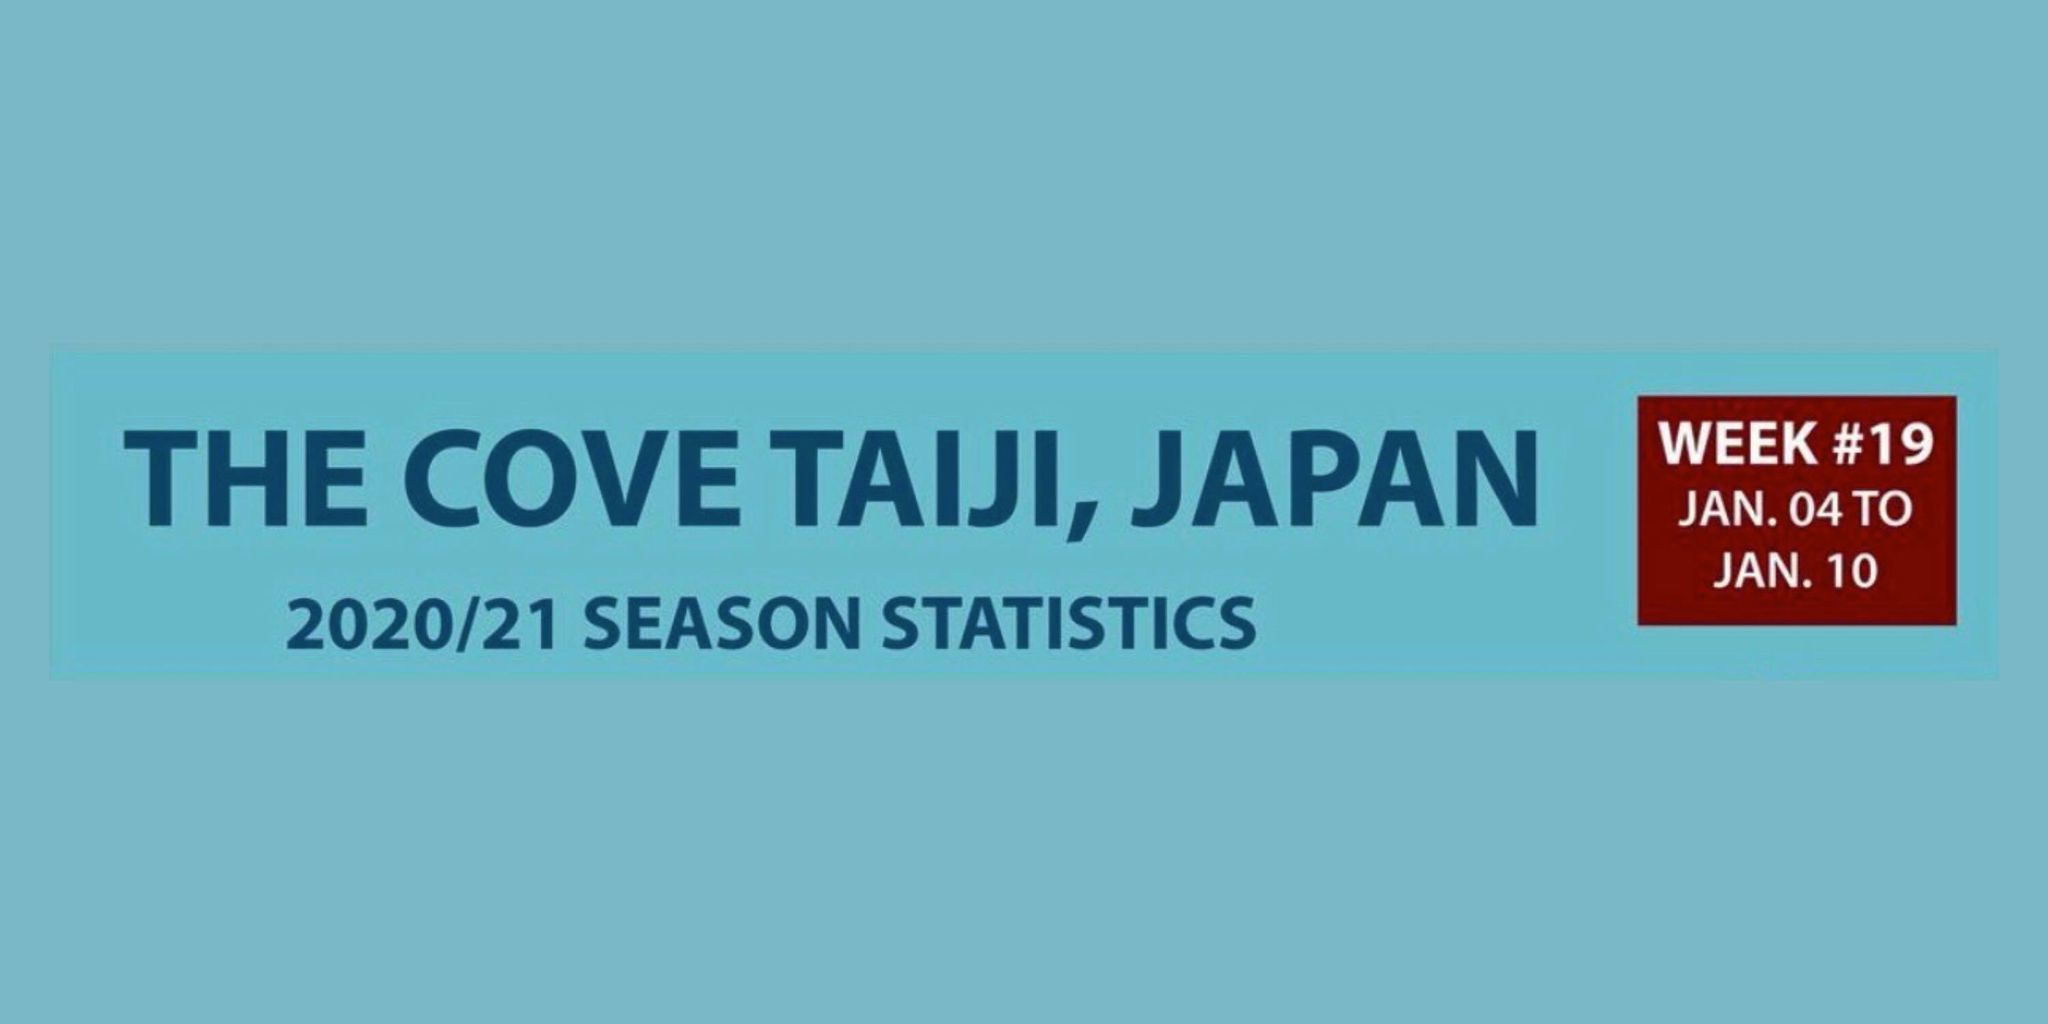 Chasse au dauphin à Taïji (Japon) – Bilan semaine du 4 au 10 janvier 2021 #19